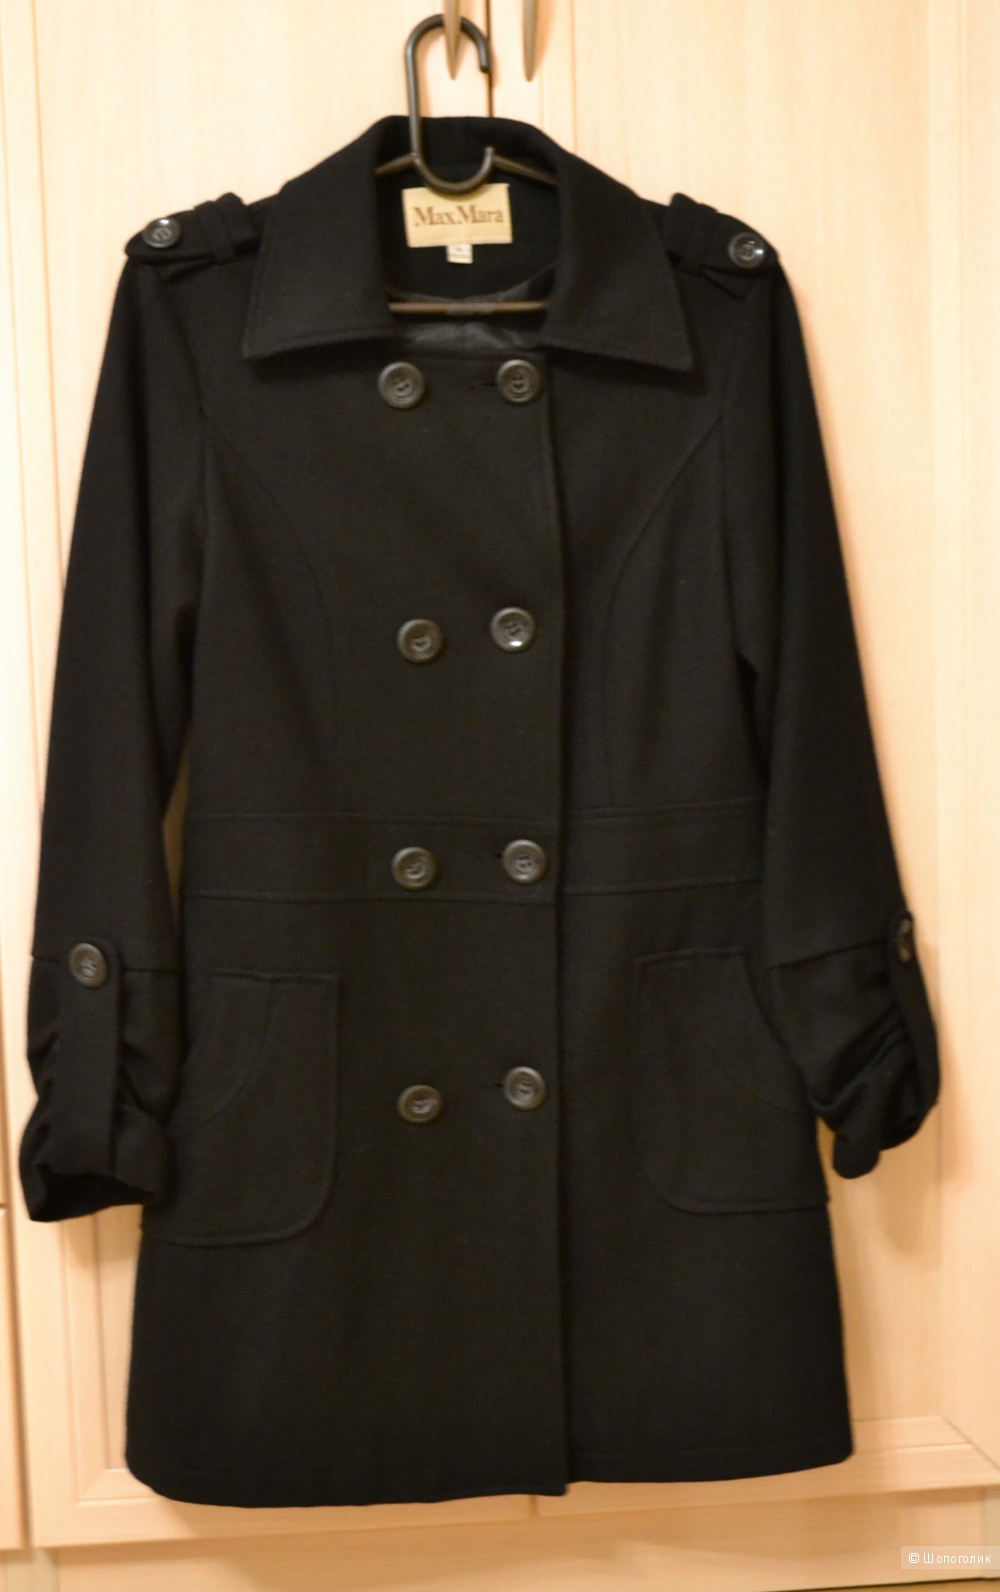 Пальто Max Mara, 46-48 размер